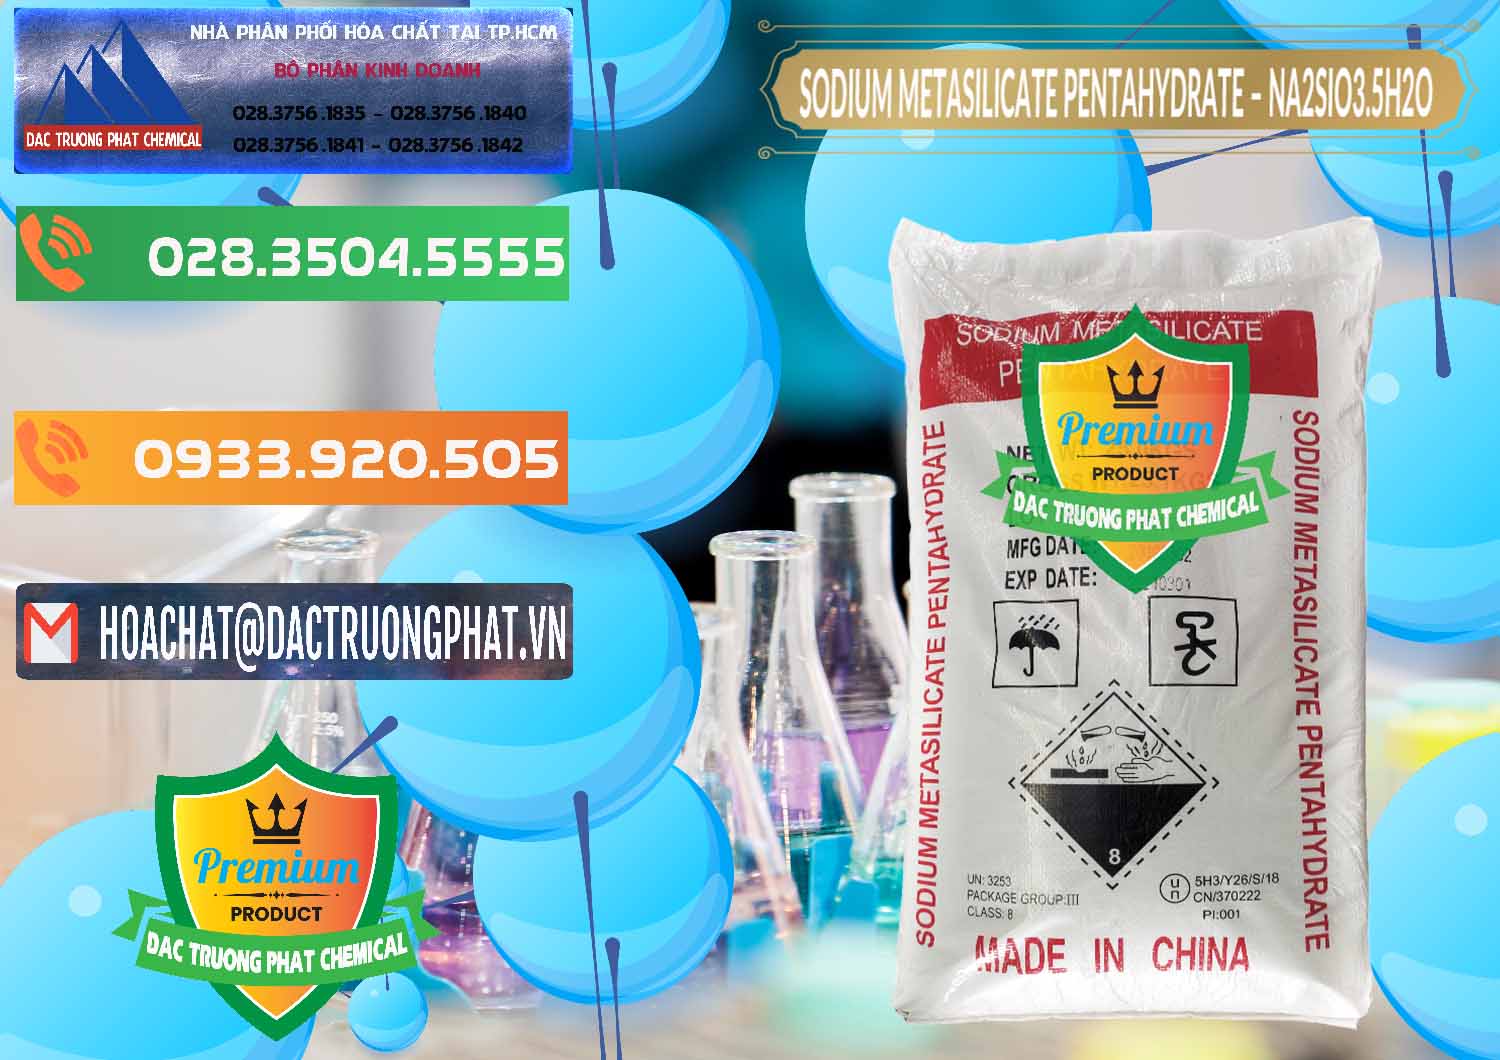 Nhập khẩu & bán Sodium Metasilicate Pentahydrate – Silicate Bột Trung Quốc China - 0147 - Cty chuyên phân phối ( kinh doanh ) hóa chất tại TP.HCM - hoachatxulynuoc.com.vn